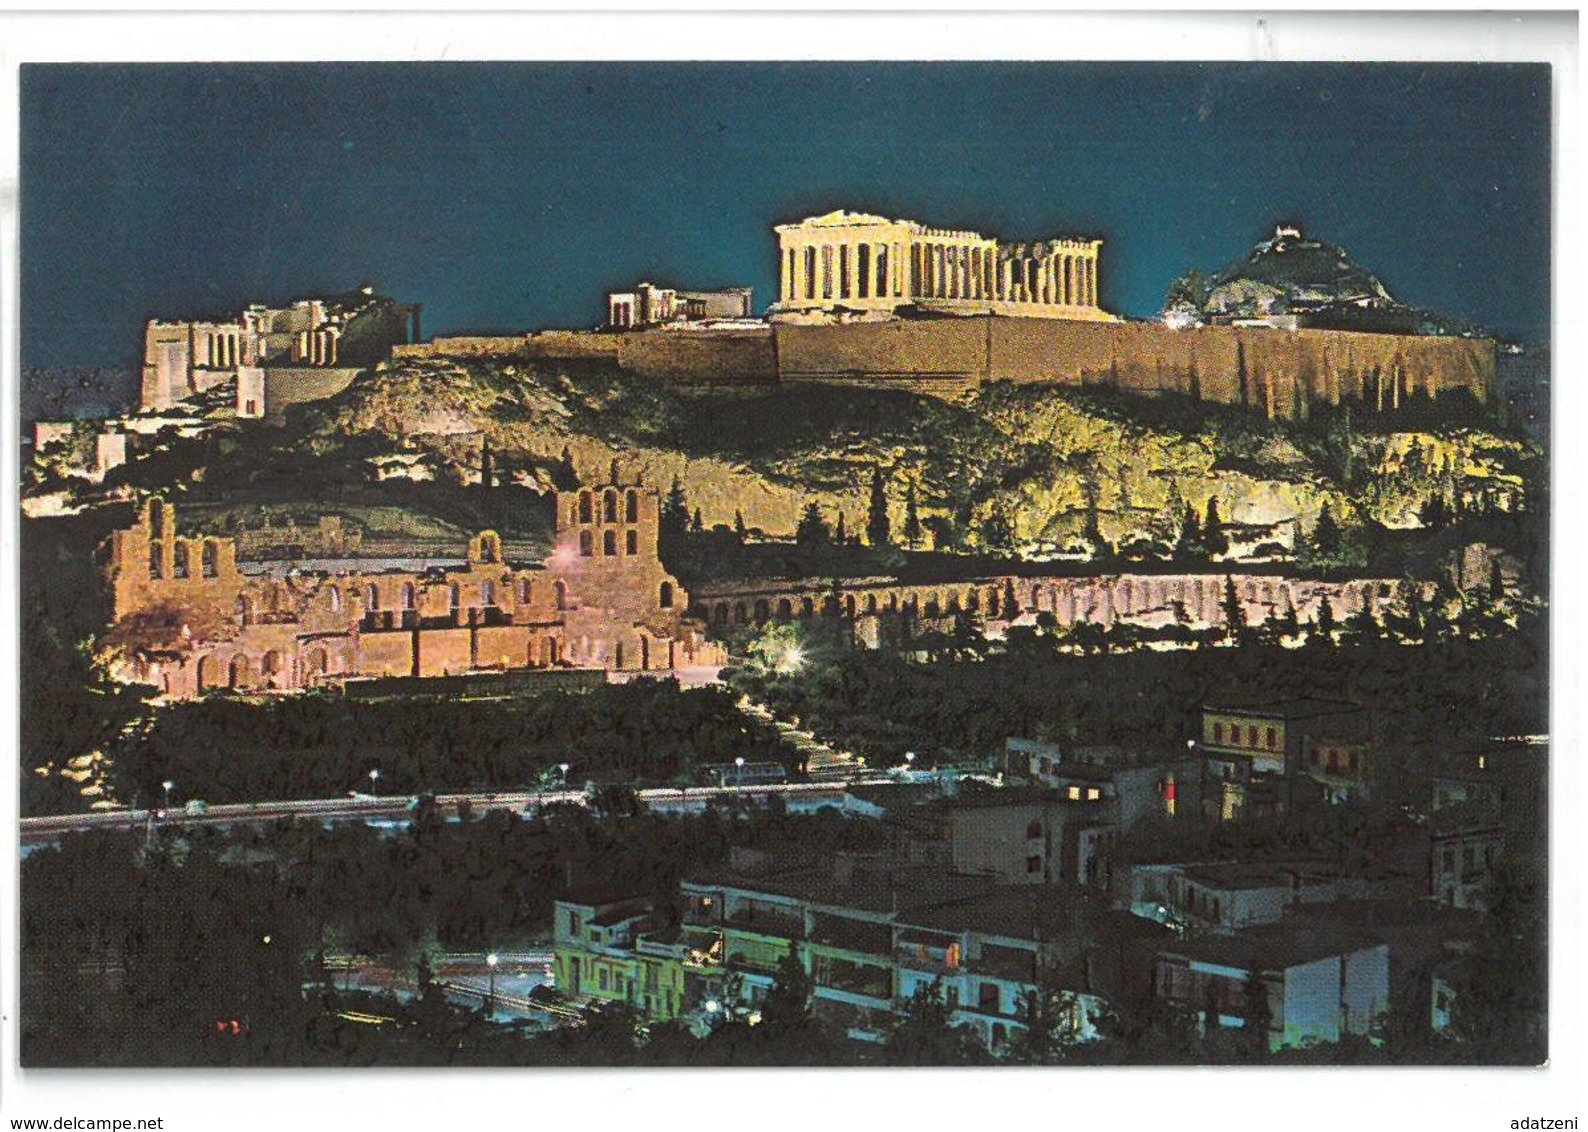 Grecia Hellas Greece Athens Acropolis By Night Non Viaggiata Condizioni Come Da Scansione - Grecia